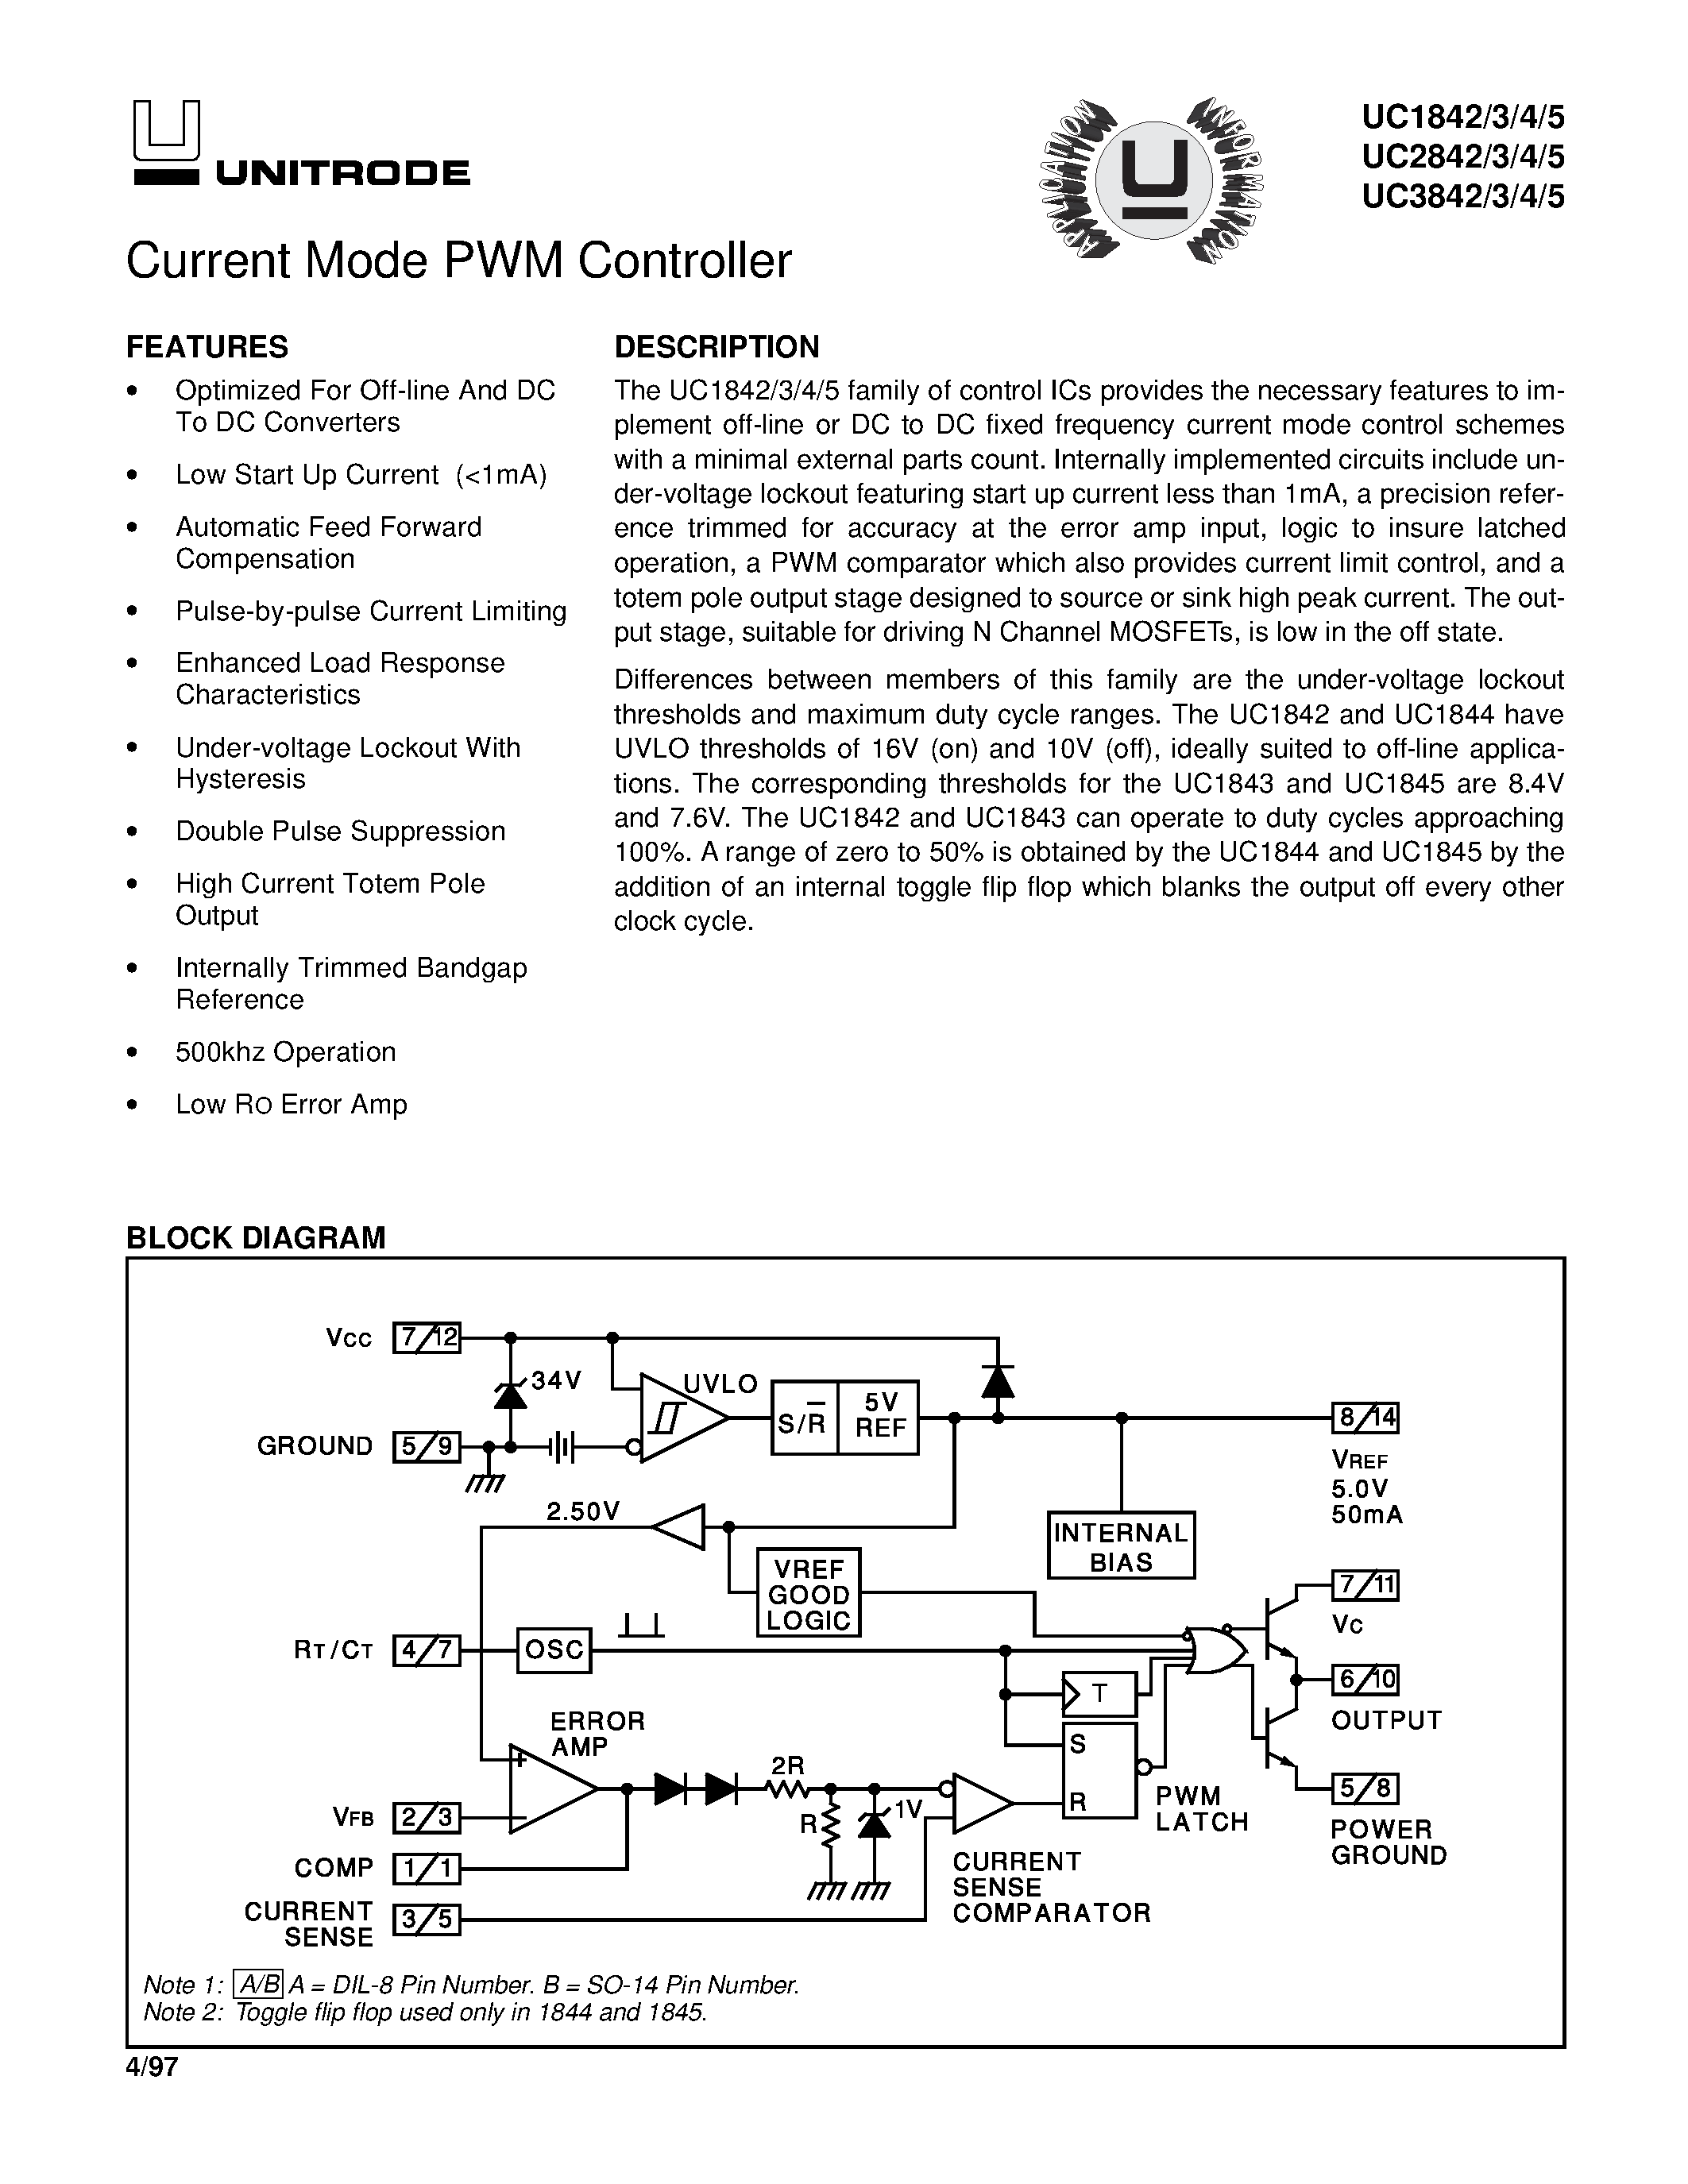 Даташит UC2844 - Current Mode PWM Controller страница 1